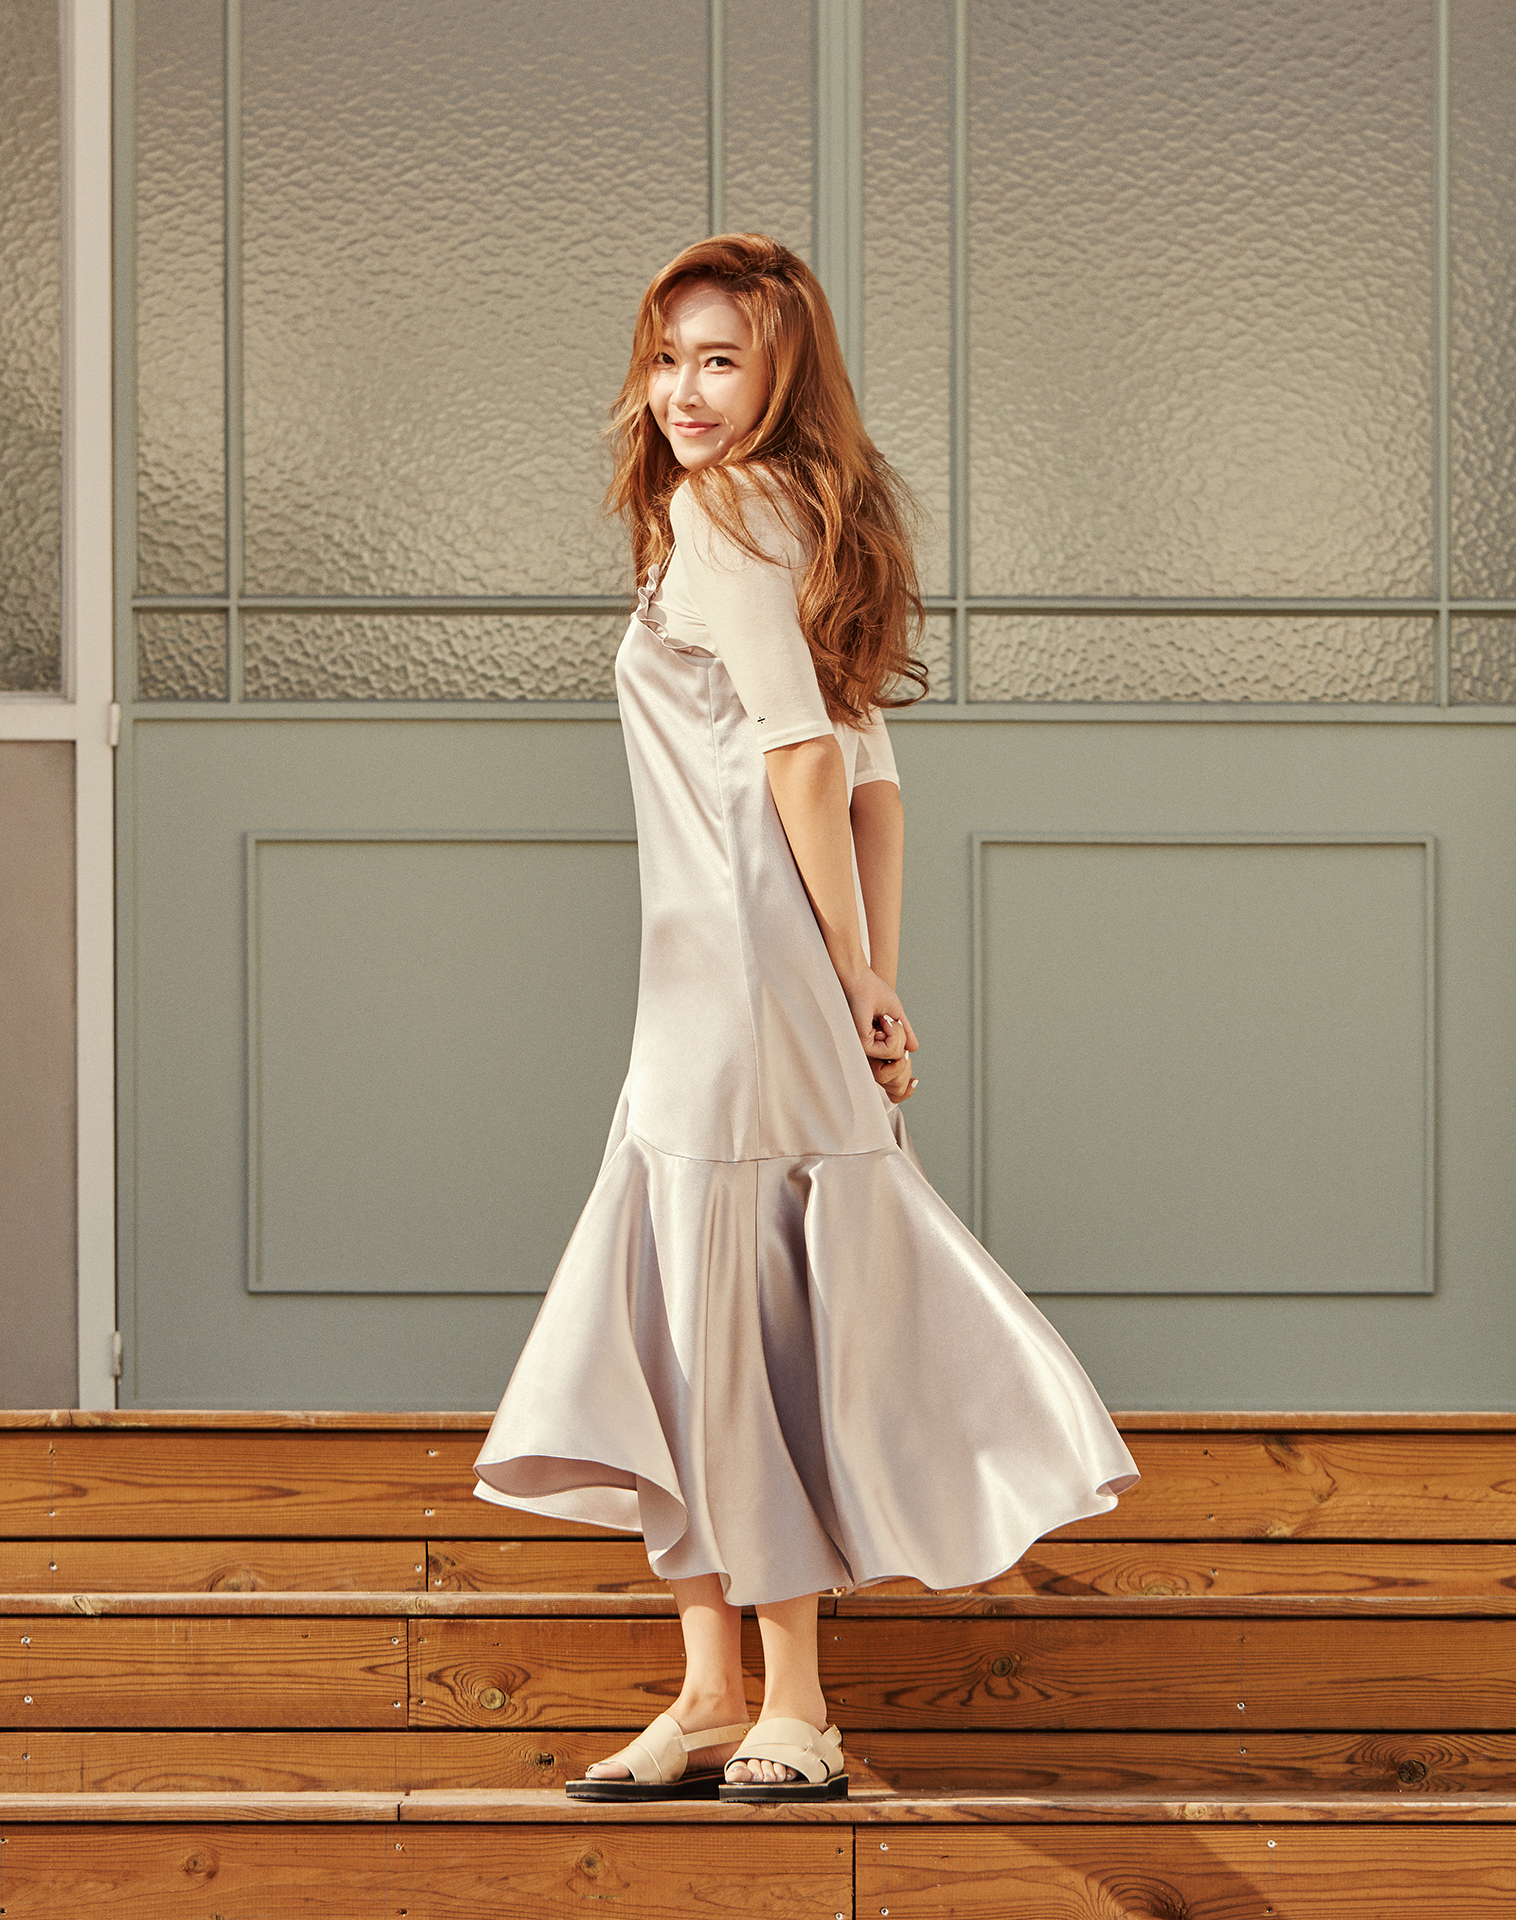 [OTHER][06-08-2014]Jessica ra mắt thương hiệu thời trang riêng của cô - BLANC & ECLARE - Page 4 7ba84f93ly1febznynbuqj21641hc7wi